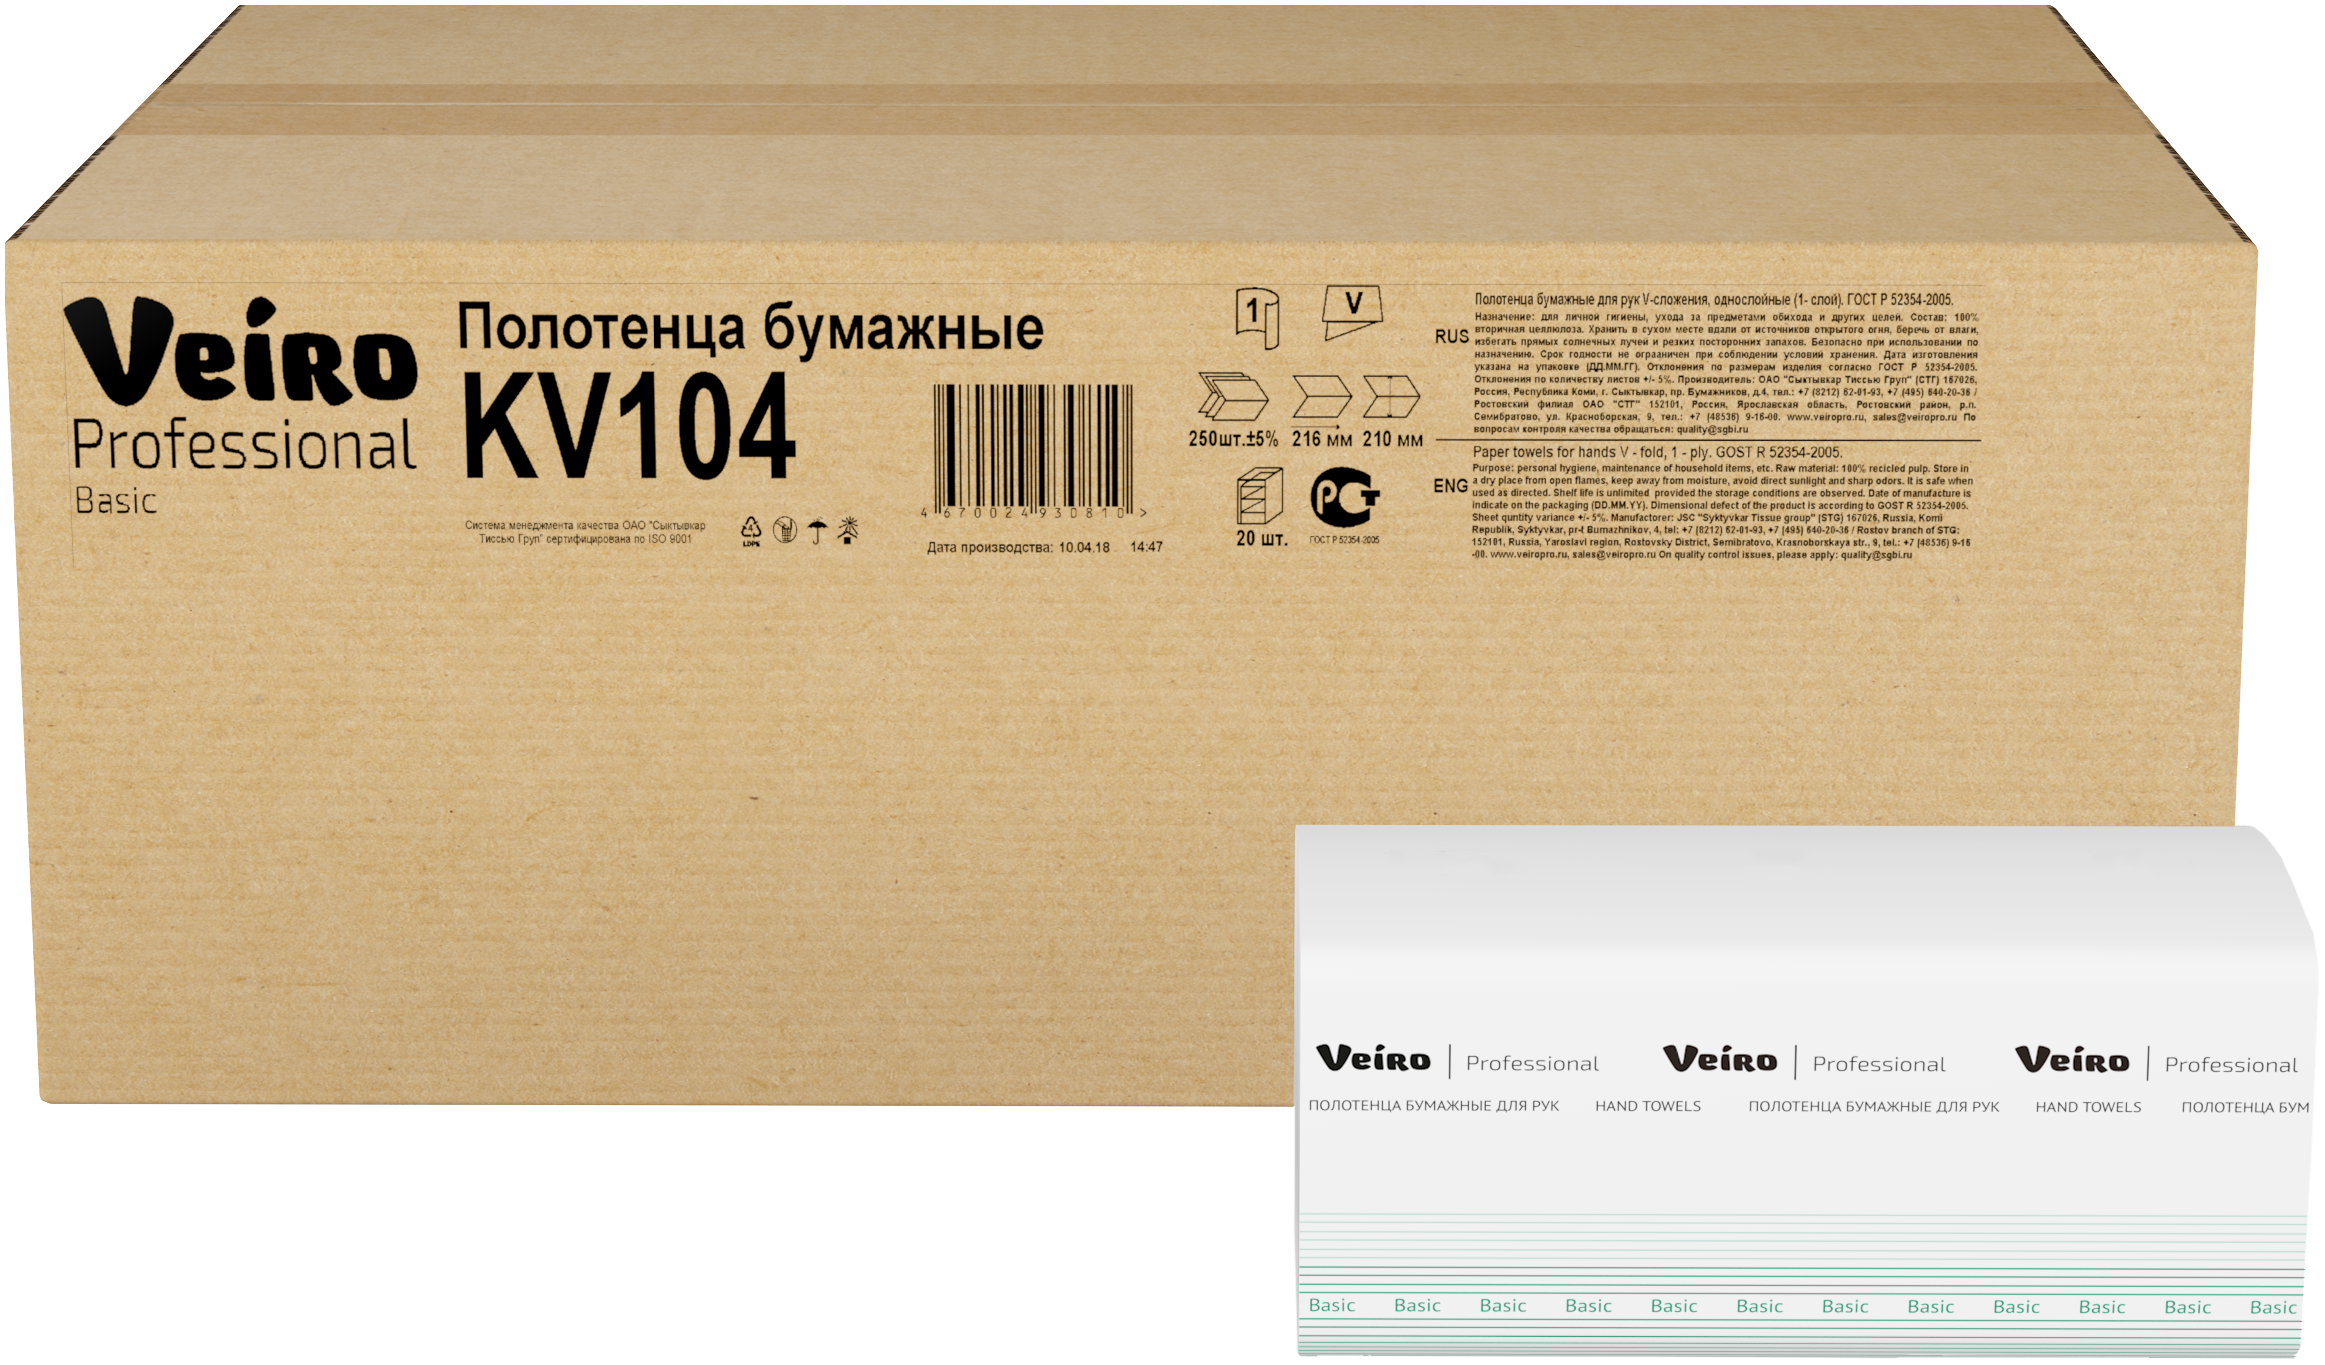 Полотенца Veiro Professional Basic листовые V-сложения белые, 250 л, 1 слой, 15шт/упак